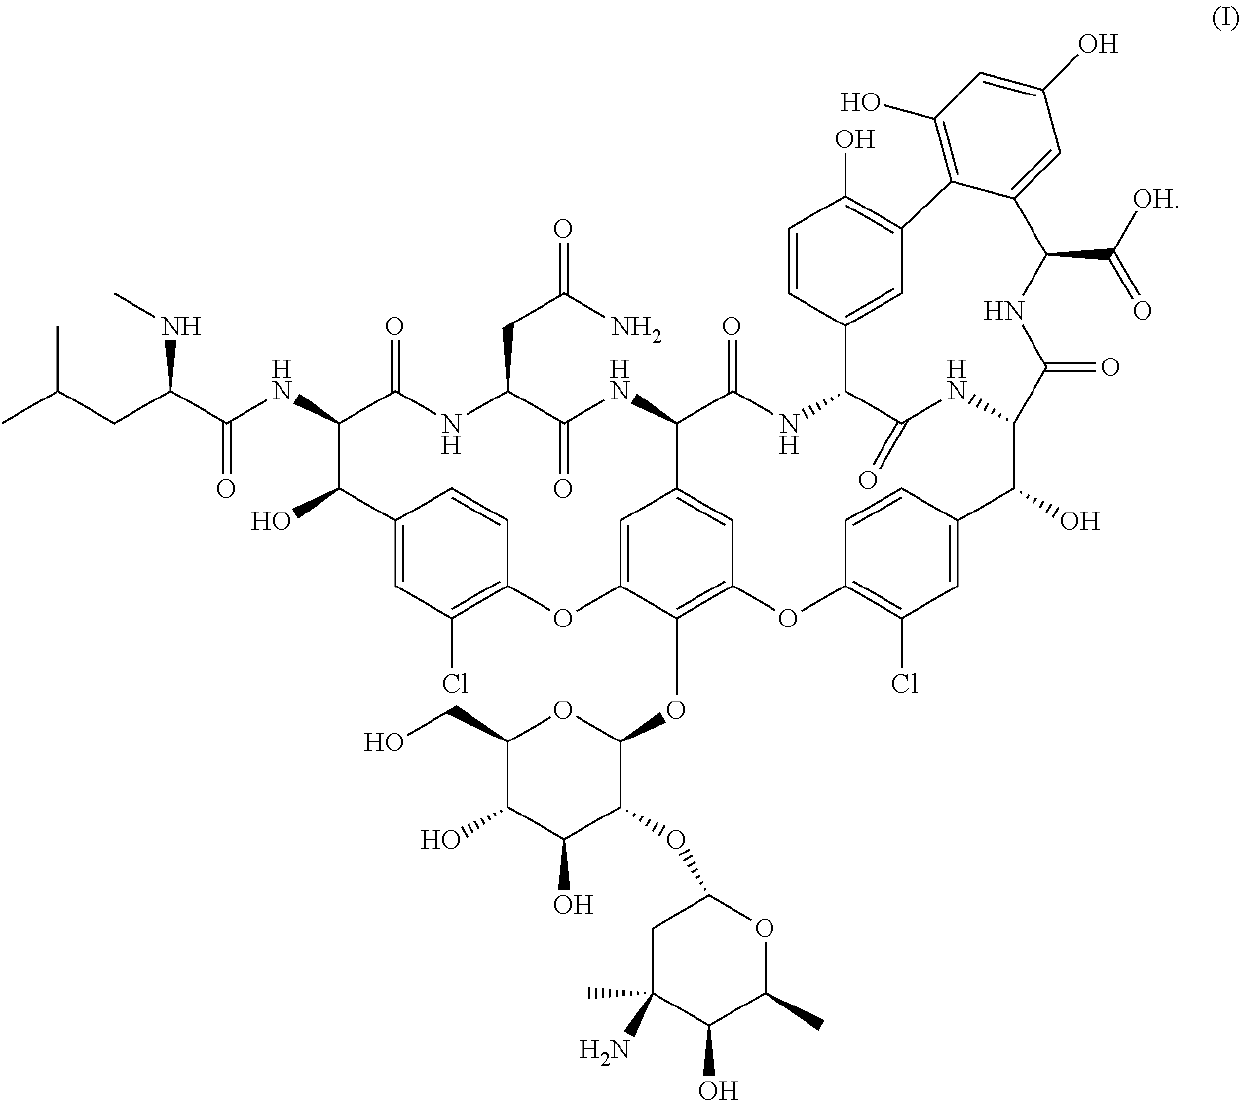 Formulations of vancomycin